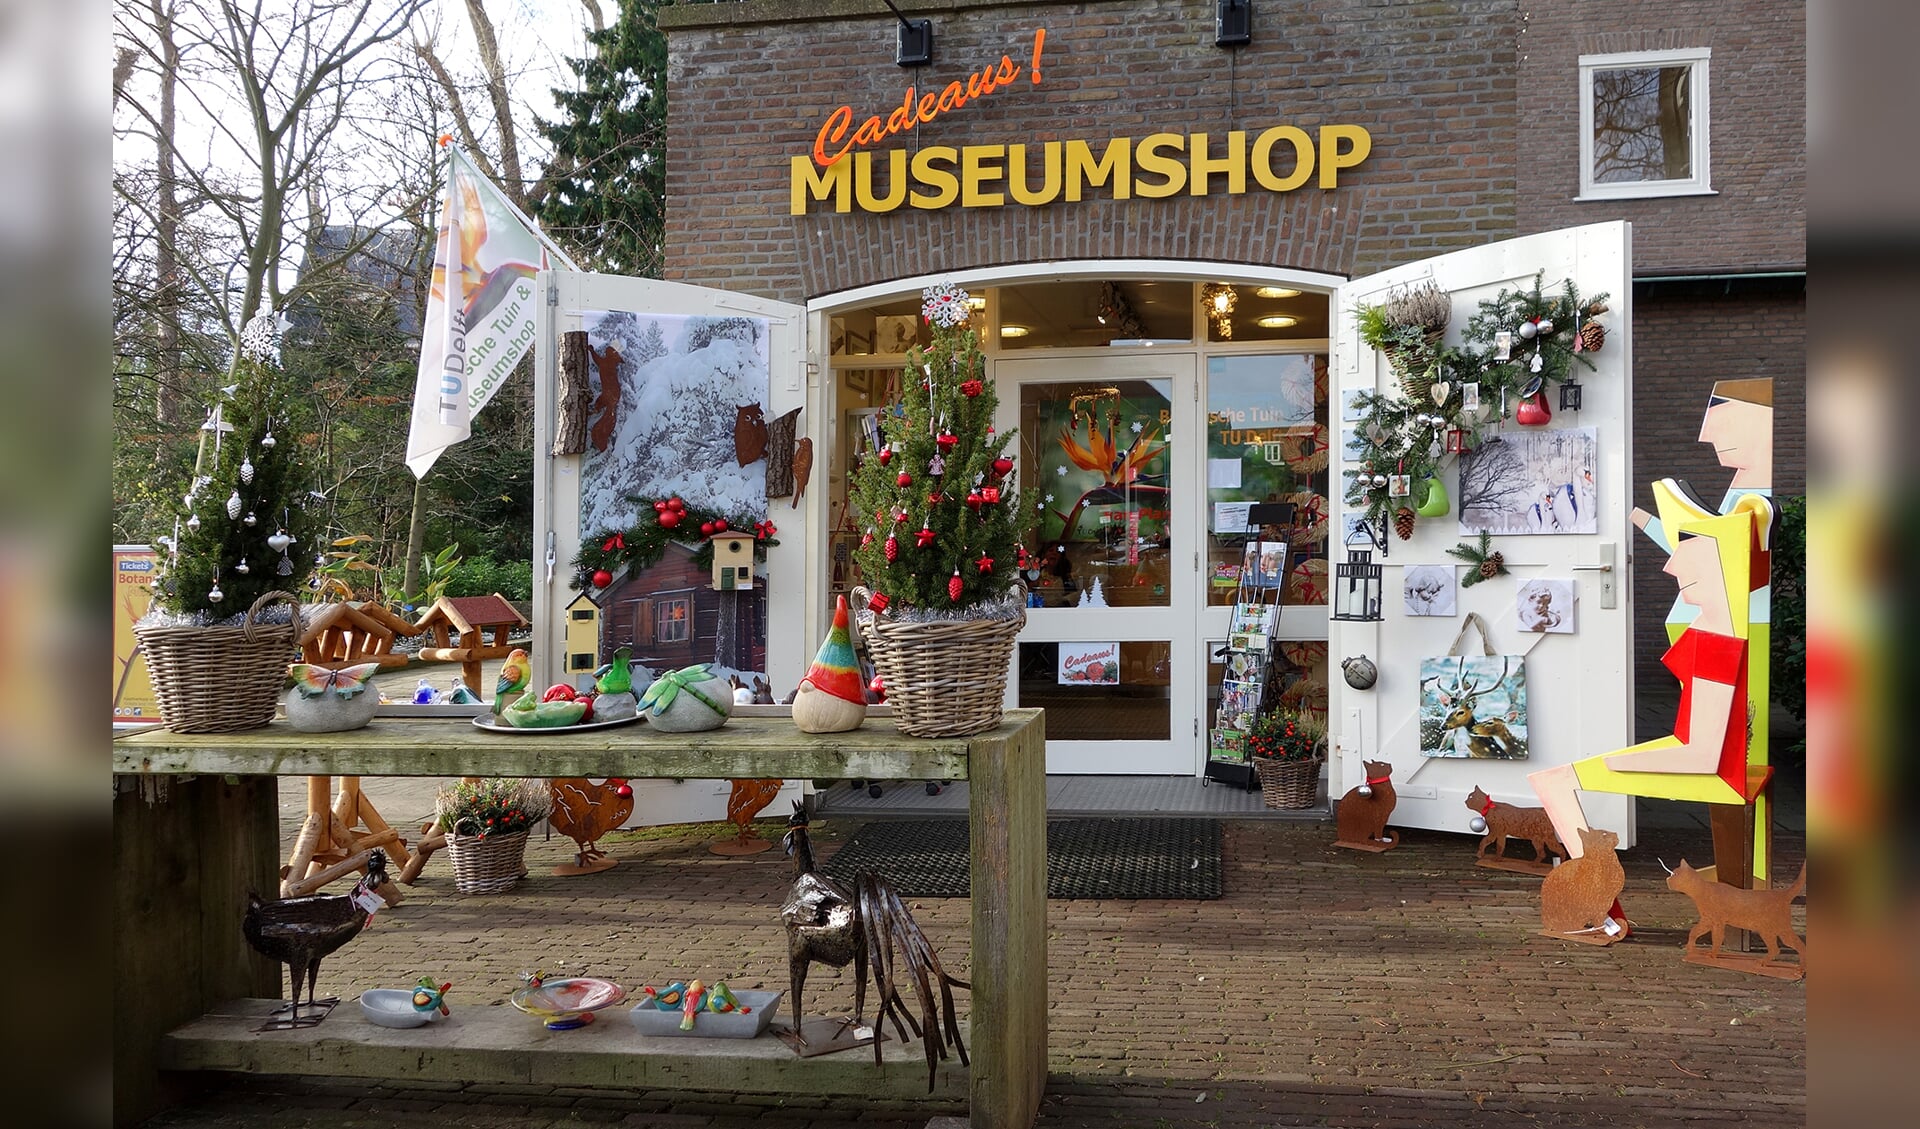 De Museumshop van de Botanische Tuin is al helemaal in kerstsferen. 